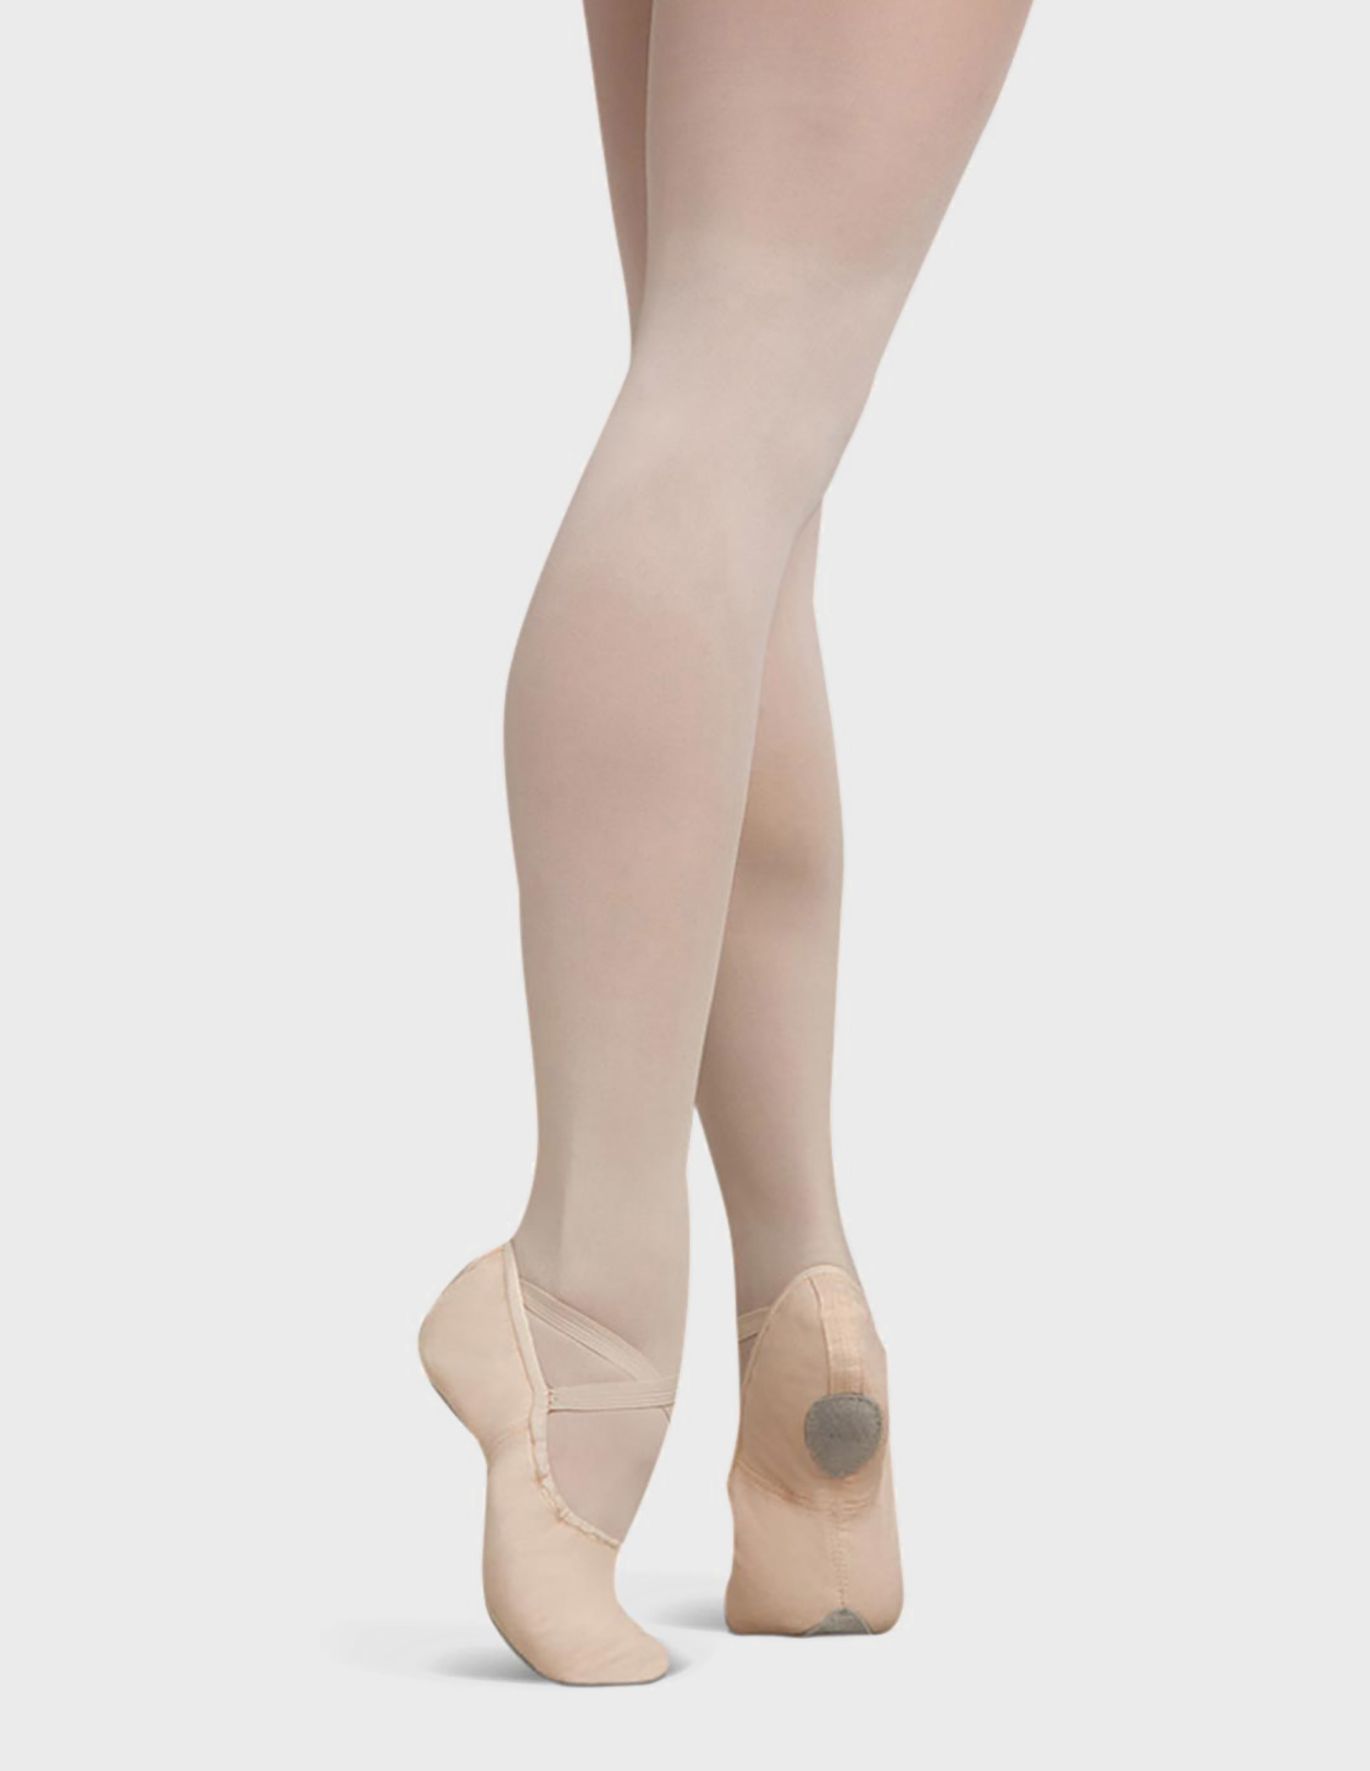 Capezio Women's Cobra Ballet Shoe,Light Suntan,42.5 EU/ 8.5 UK